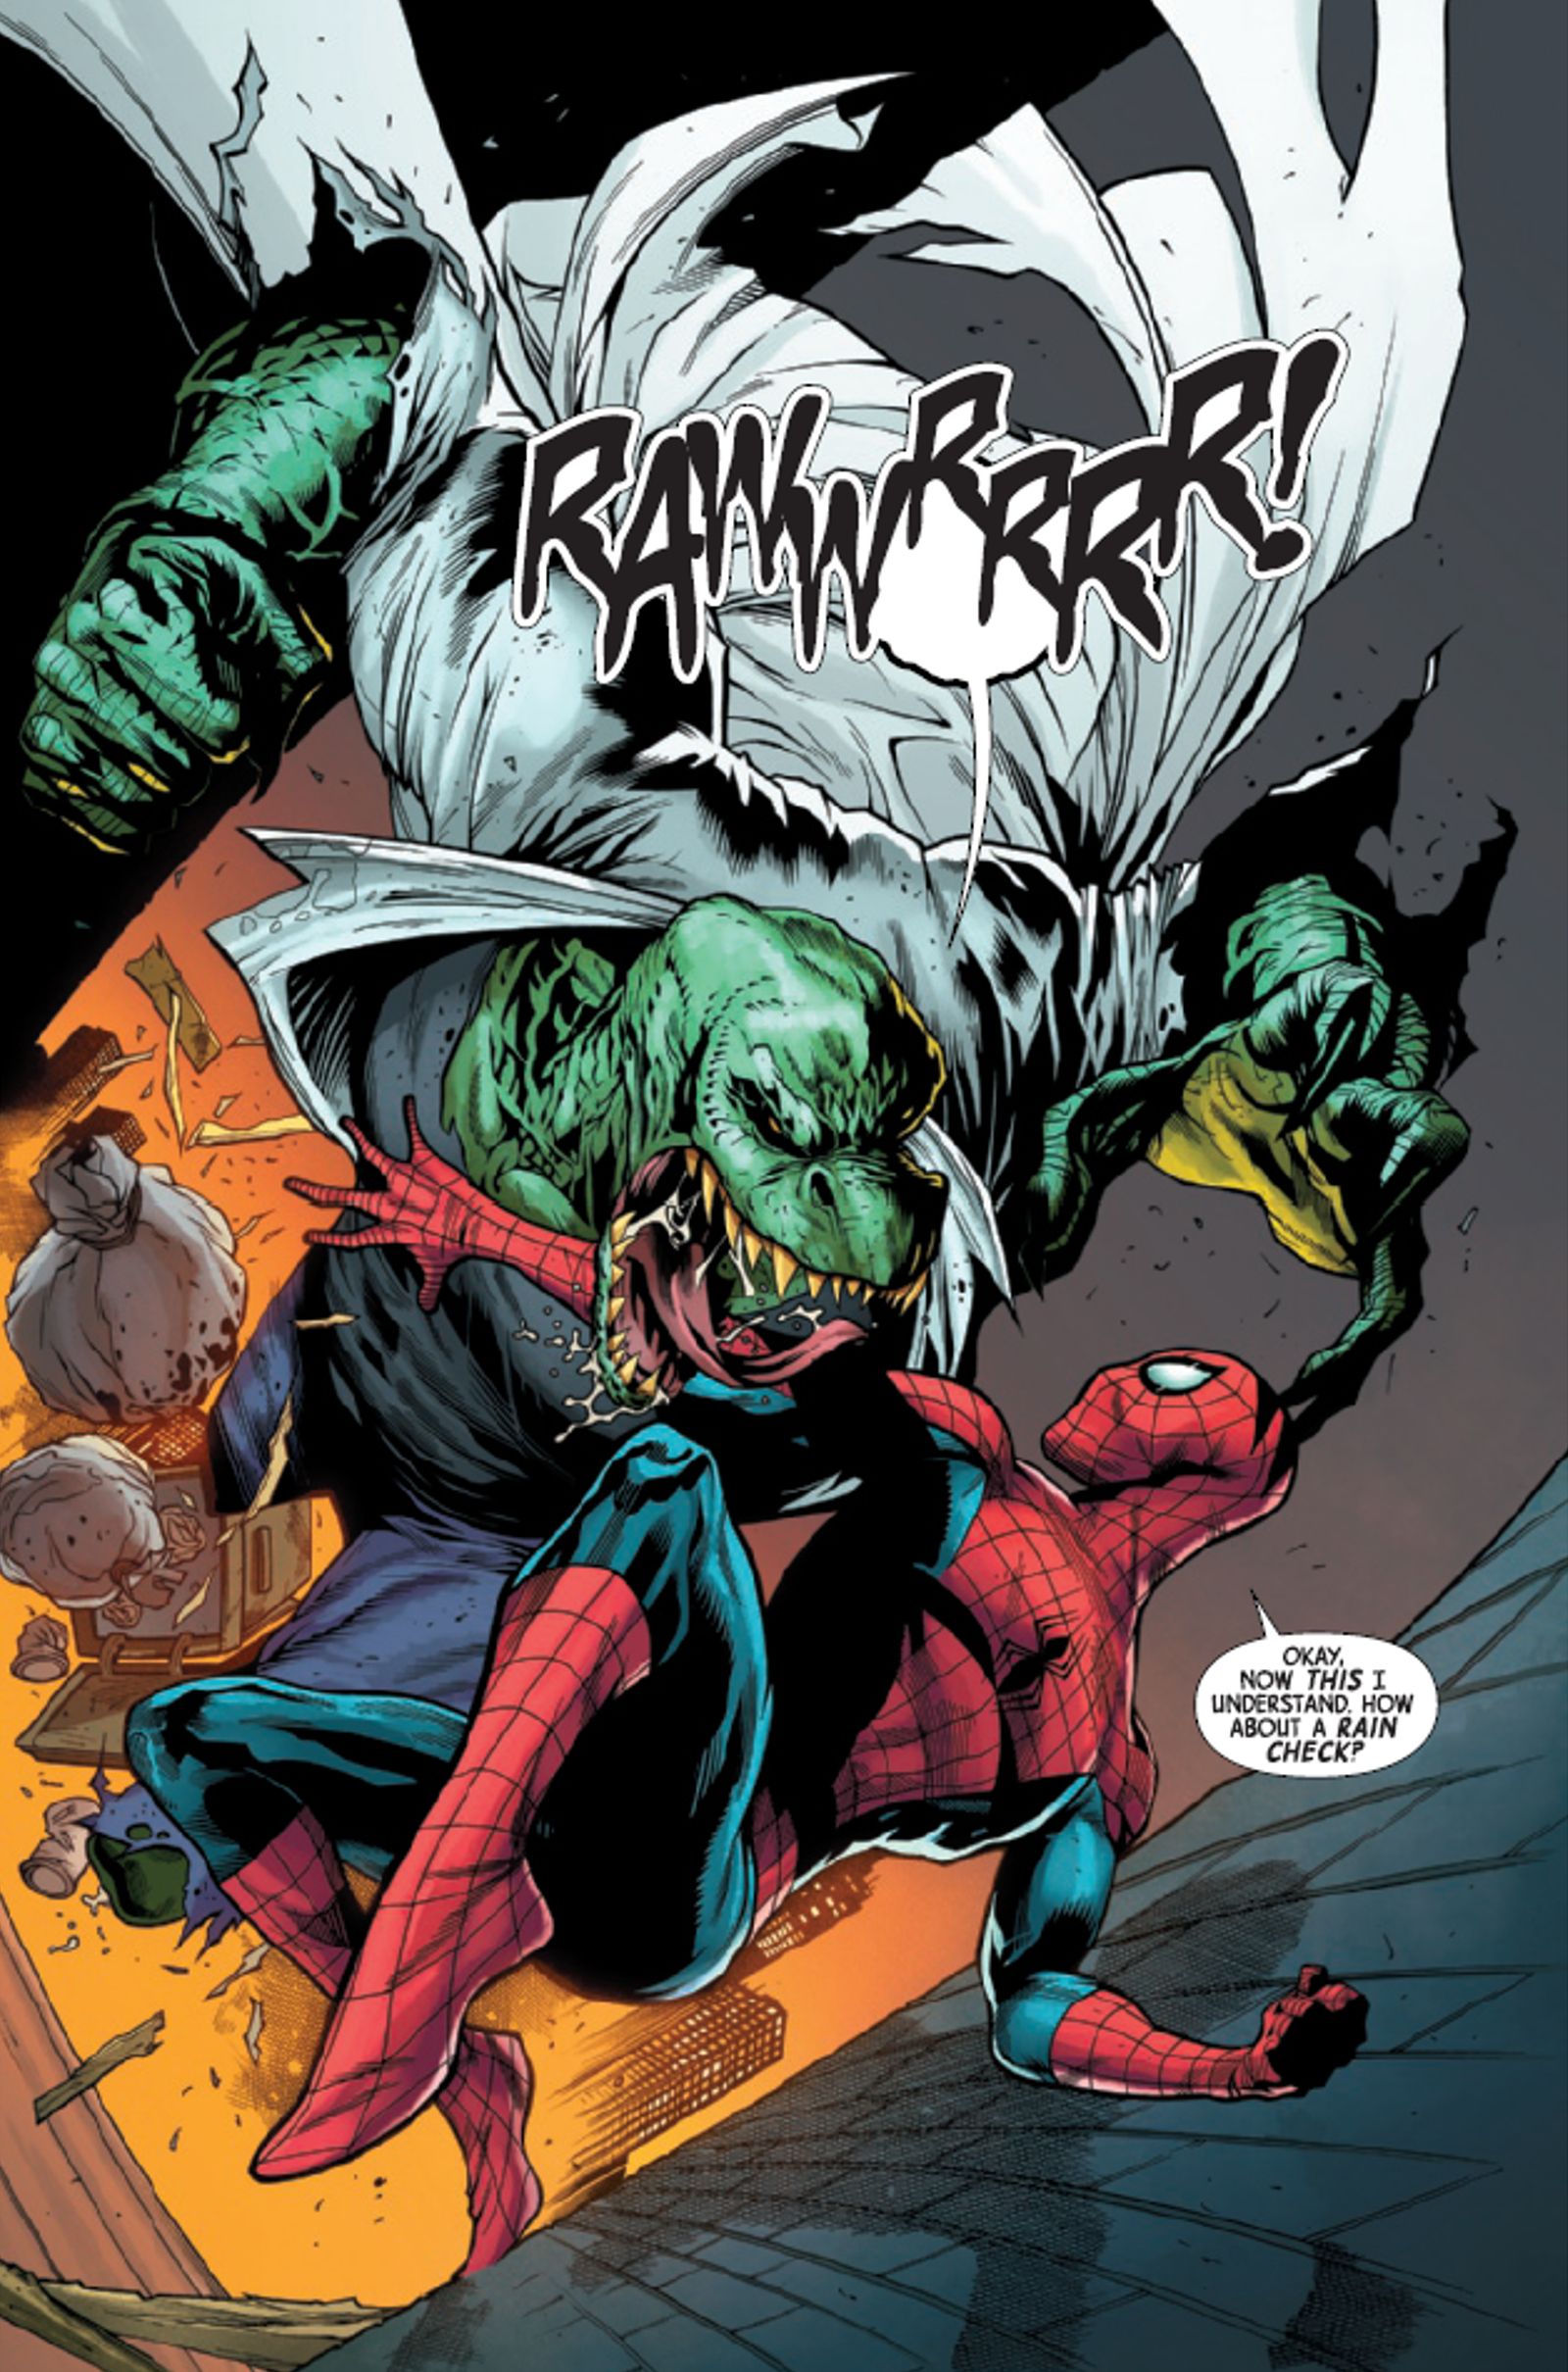 Один из самых смертоносных злодеев «Человека-паука» принимает шокирующий поворот